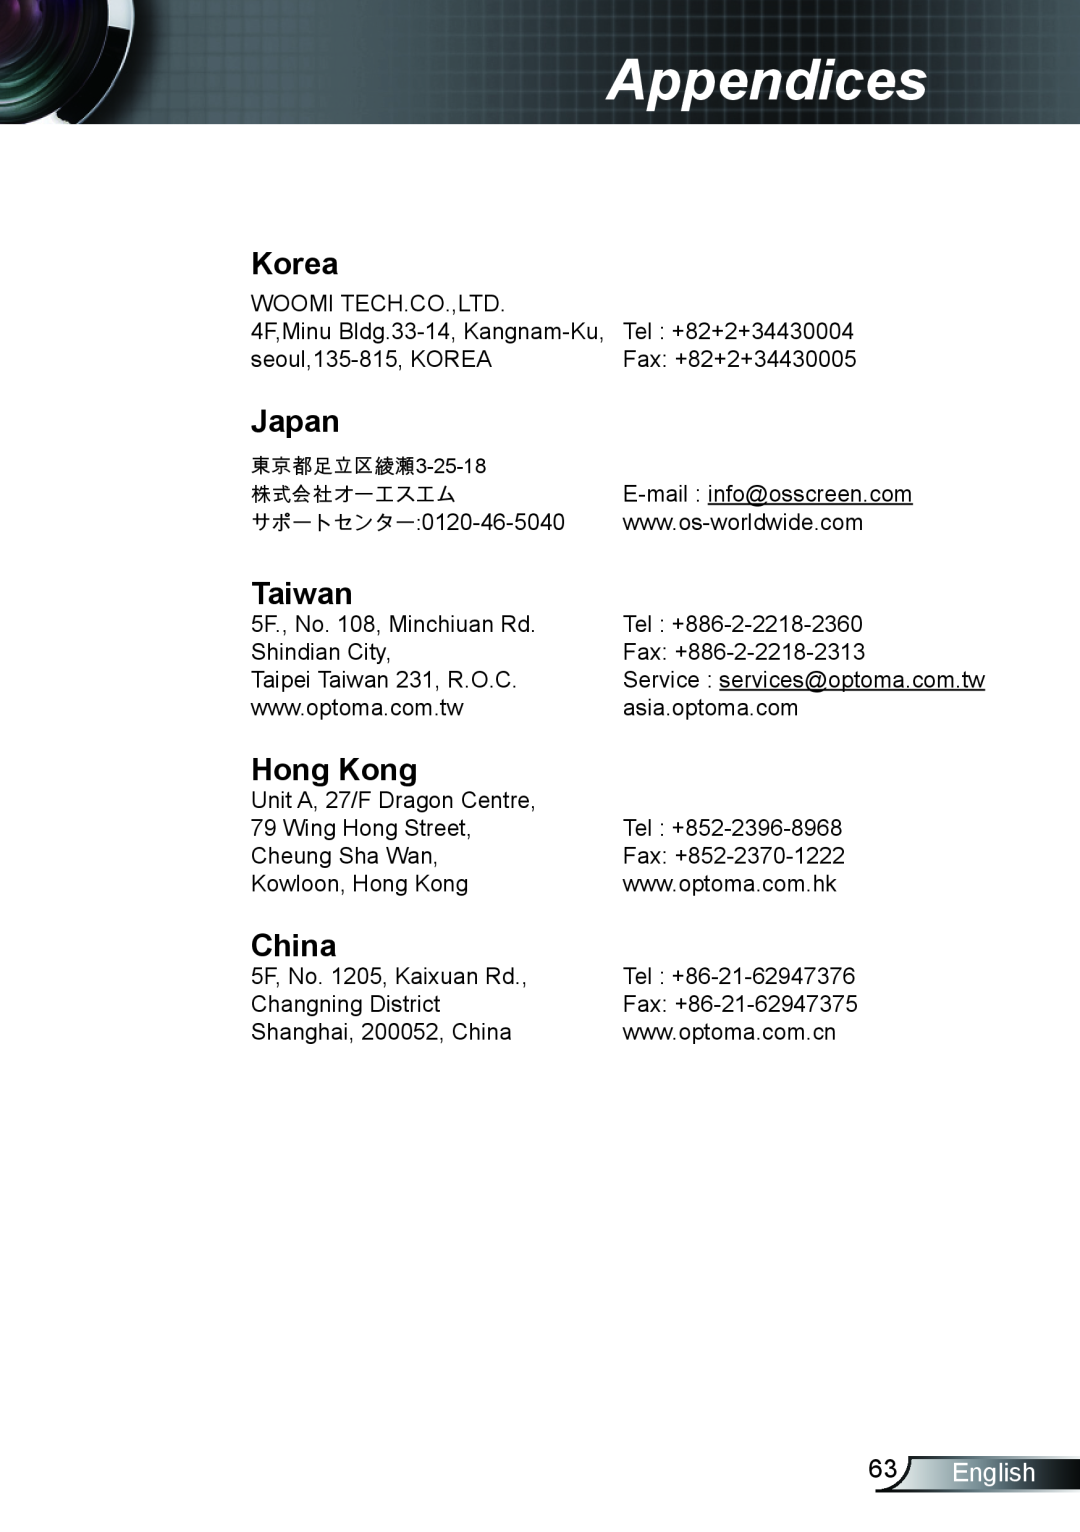 Optoma Technology TX762GOV, TX615GOV, TX5423D manual Korea, Japan, Taiwan, Hong Kong, China, English, Appendices 